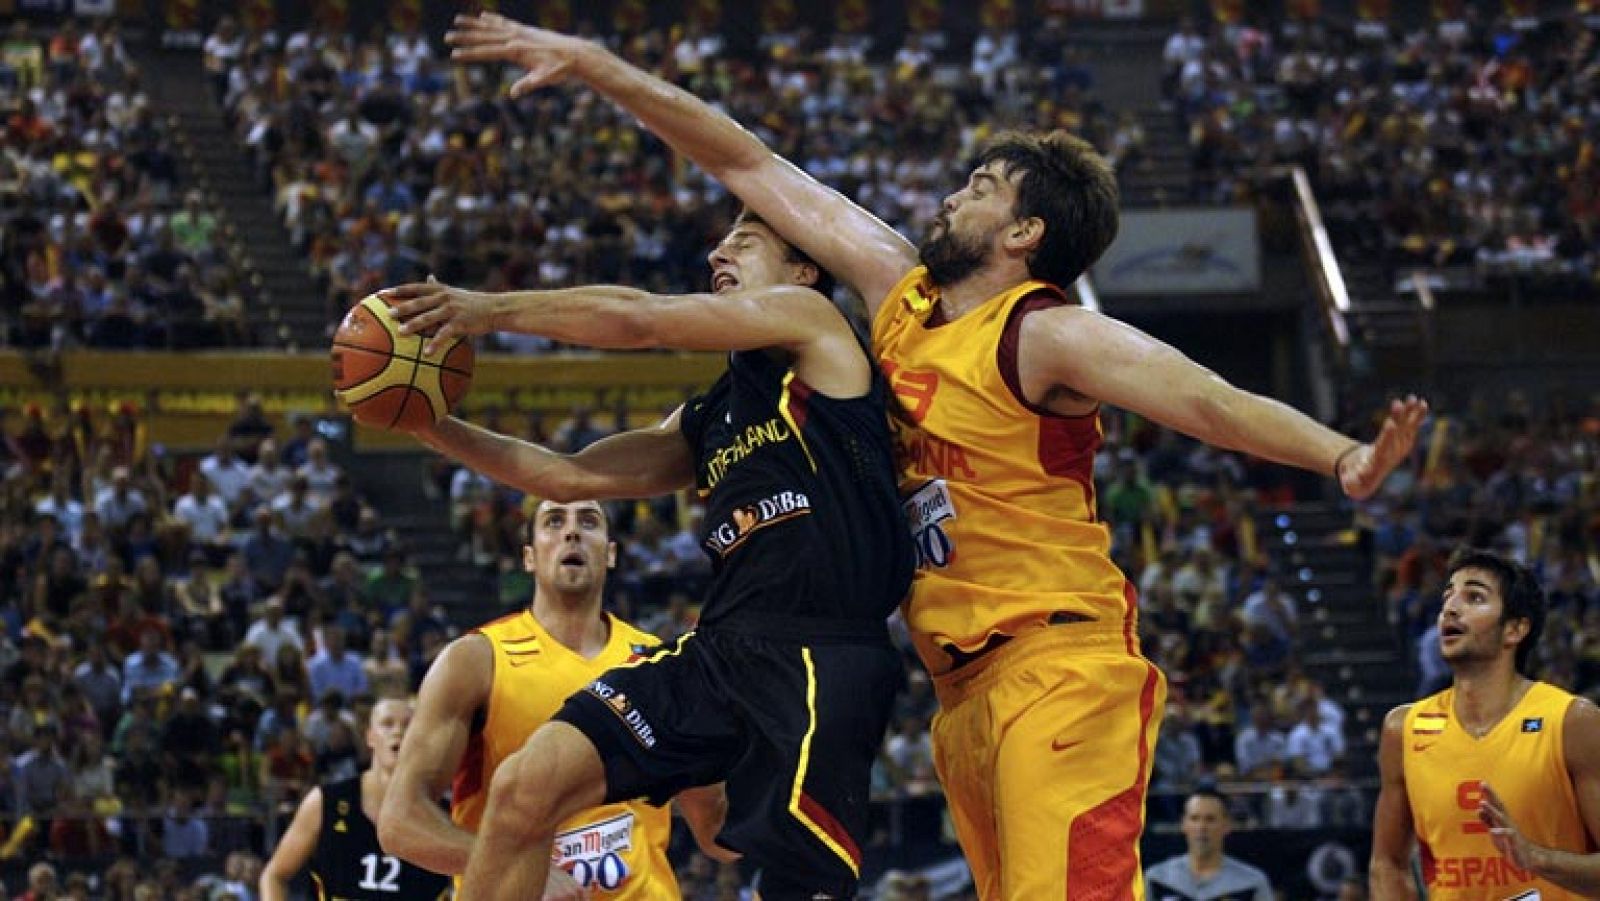 La selección española de baloncesto venció esta noche en el Coliseum a la alemana por una abultada ventaja (85-54) en una cita en la que el juego fue de menos a más, pero en la que los últimos instantes dejaron detalles para el recuerdo. El inicio de